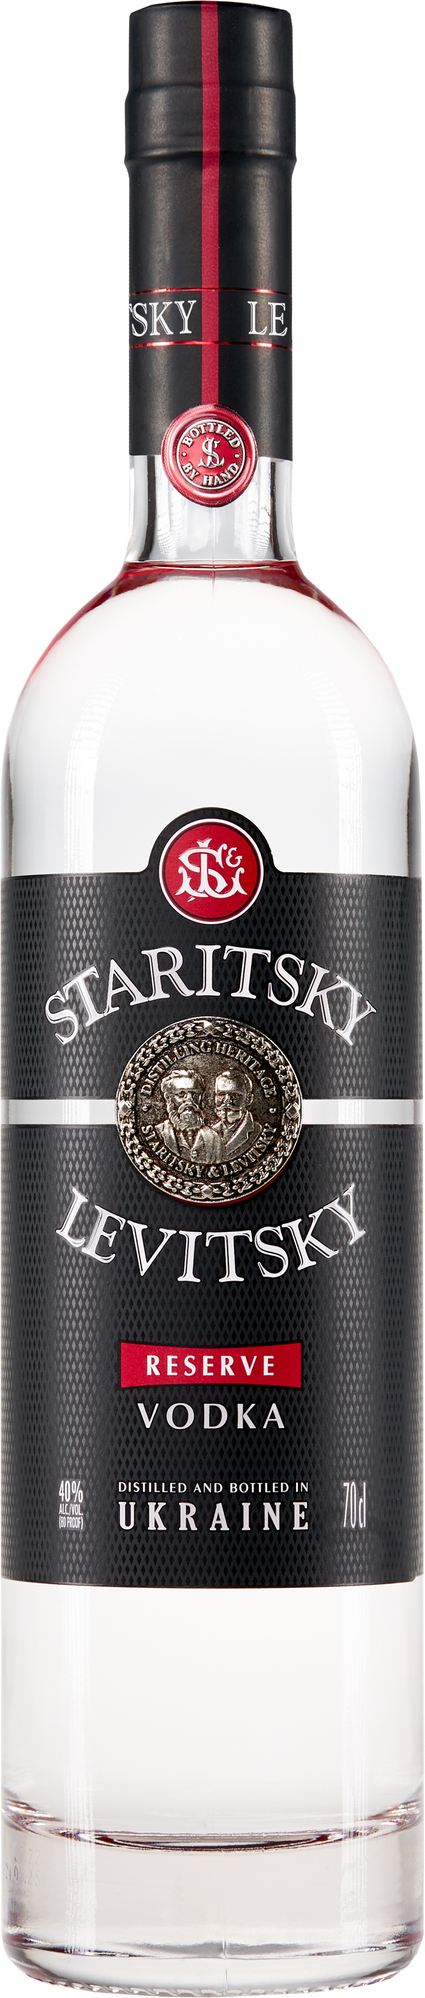 Staritsky Levitsky Reserve Vodka 40% 0,7l